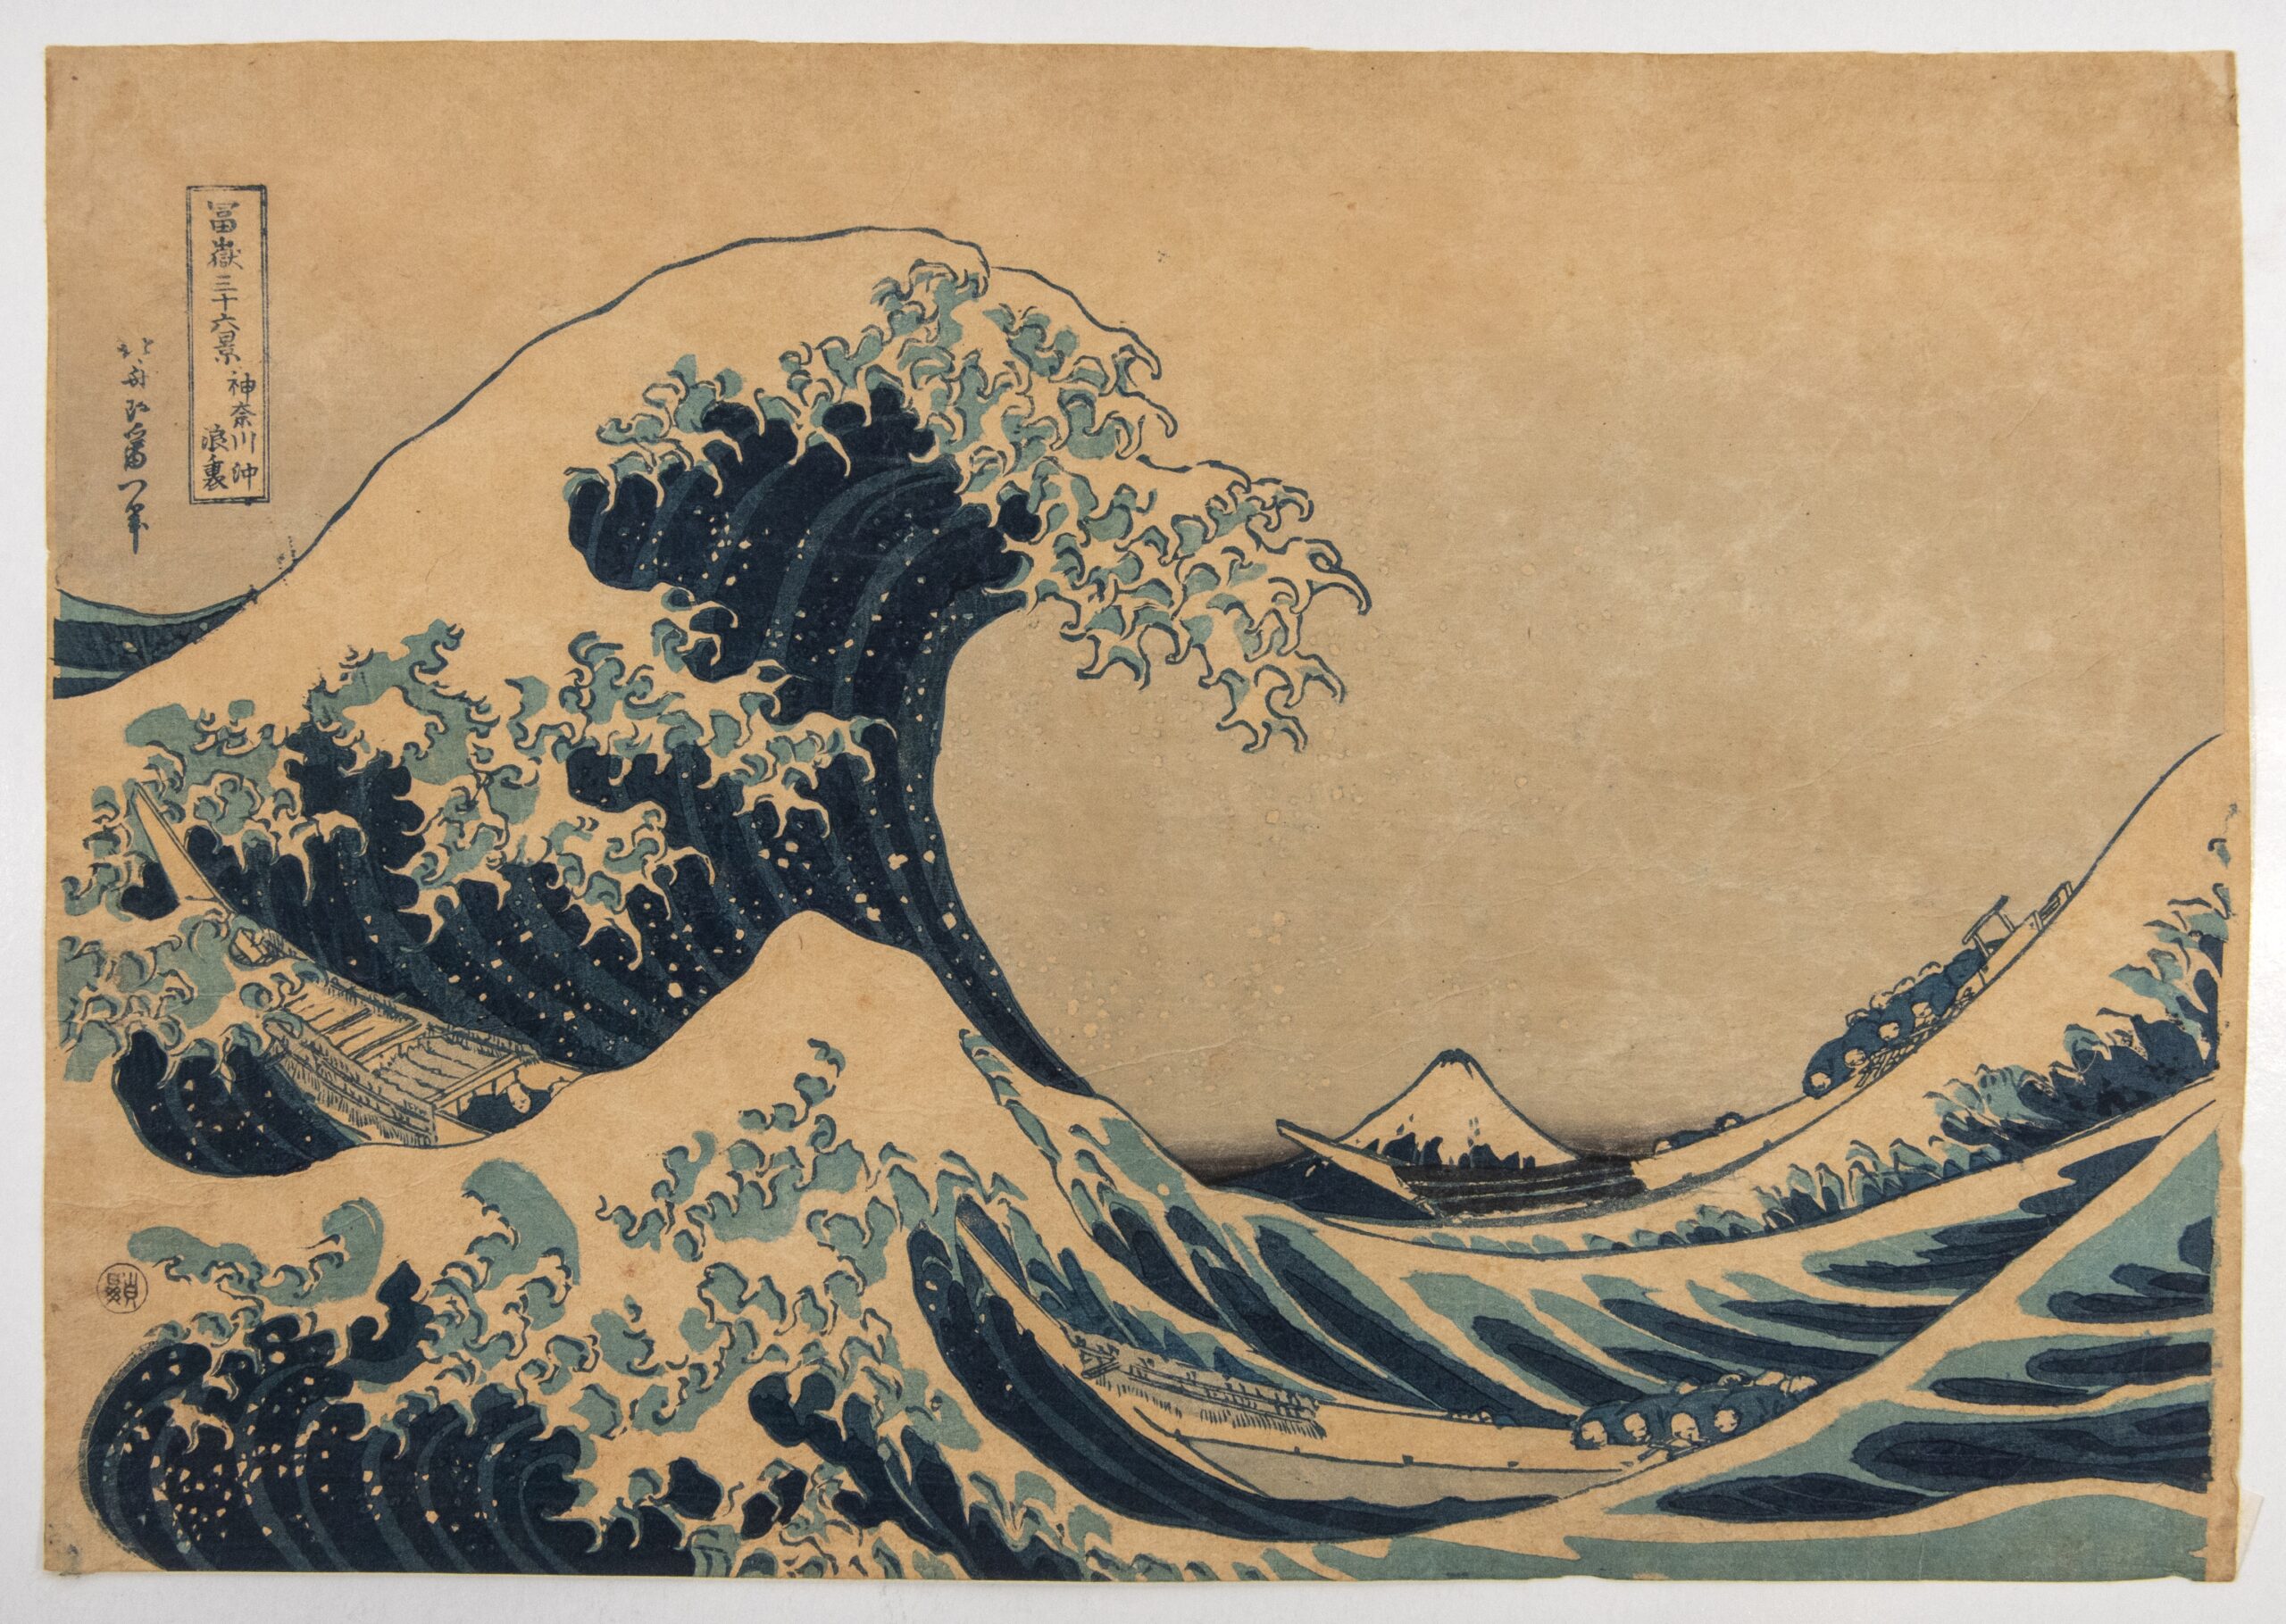 mostra hokusai Sottol’onda al largo di Kanagawa, notaanche comeLa Grande onda, dalla serieLe 36 vedute delMonte Fuji, xilografia policroma, 1895-1915 ca, collezioneprivata